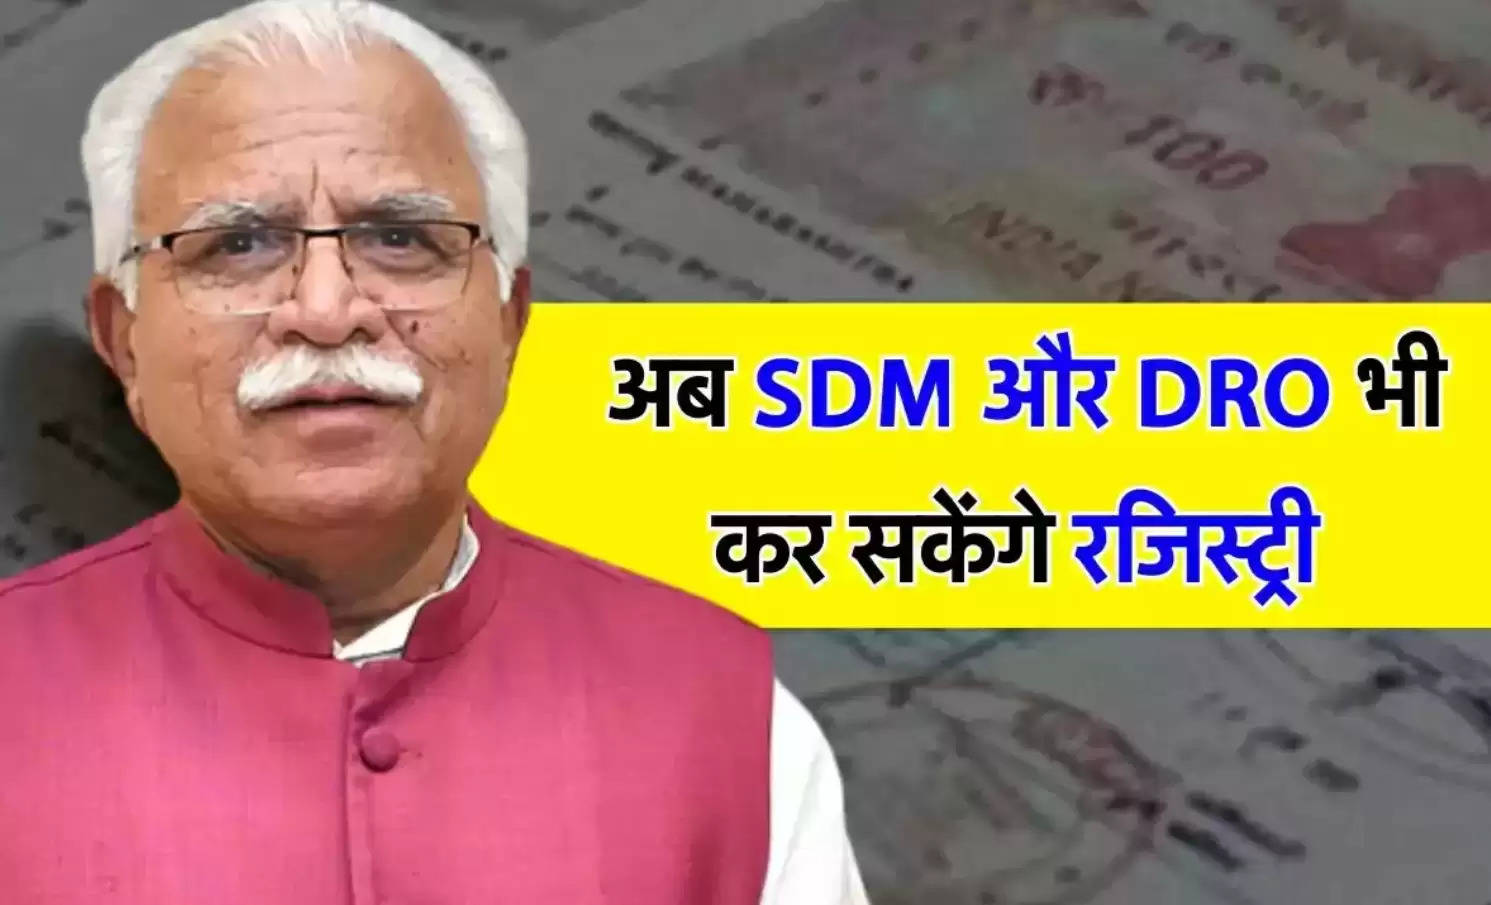 Haryana Update: तहसीलदारों के अलावा अब SDM और DRO भी कर सकेंगे रजिस्ट्री, हाथों हाथ होगा इंतकाल